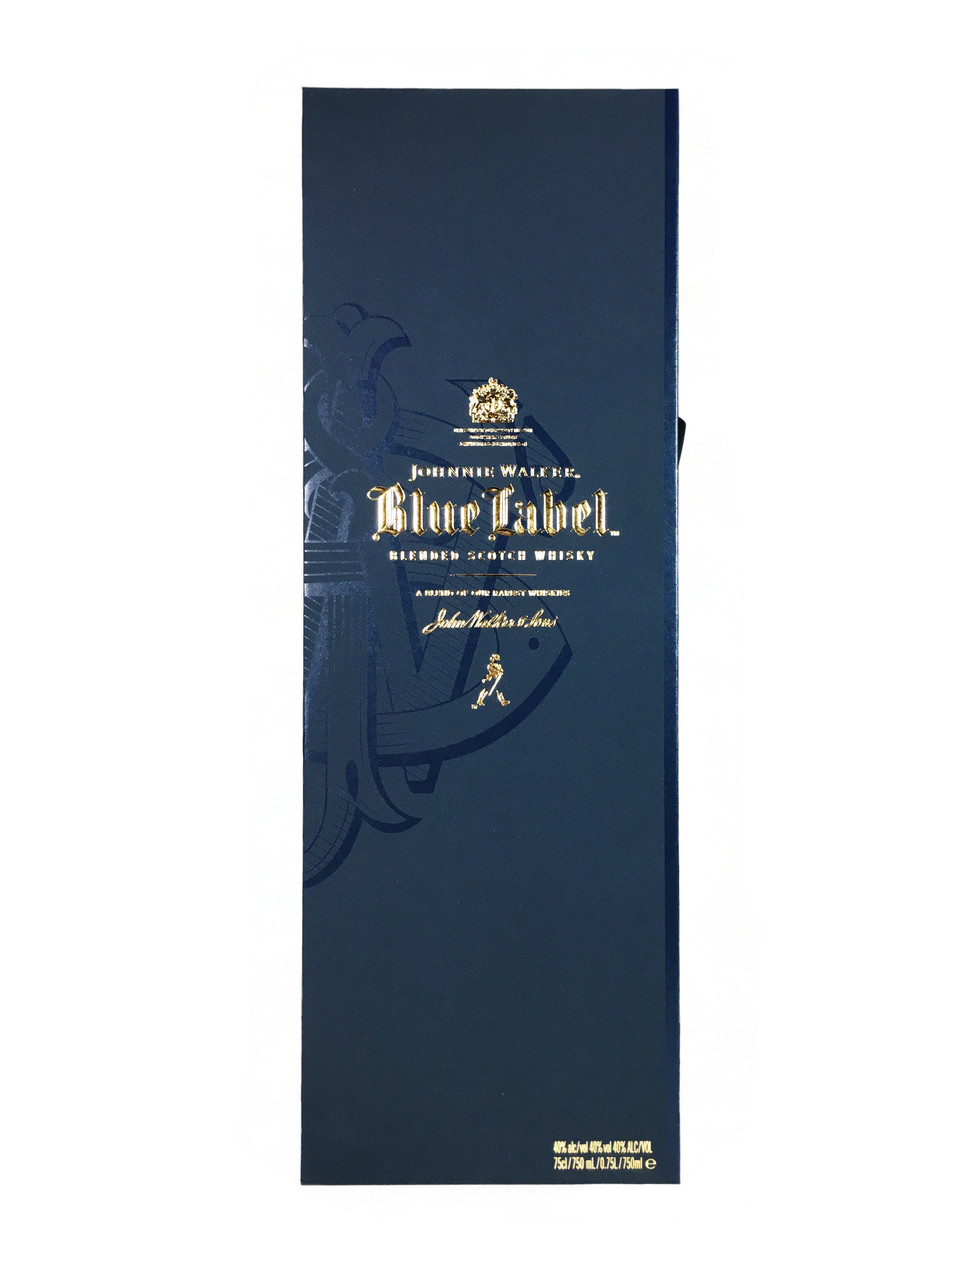 特価豊富なJOHNNIE WOLKER Blue and Pure Malt ウイスキー